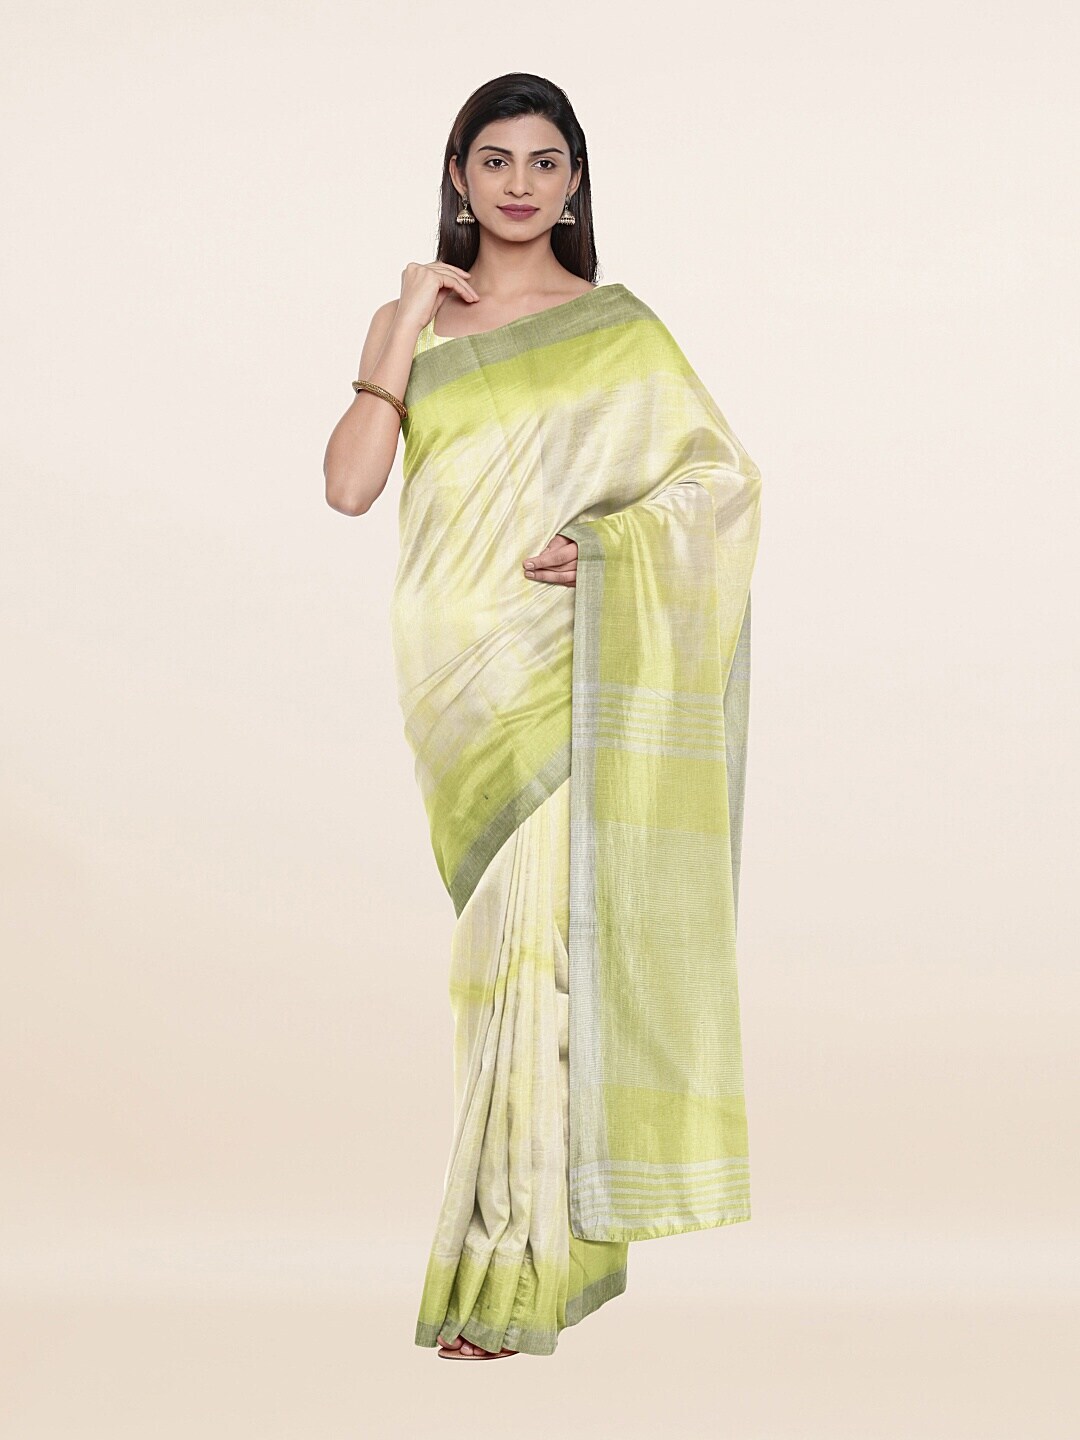 Pothys Cream-Coloured & Green Tie and Dye Zari Pure Linen Saree Price in India